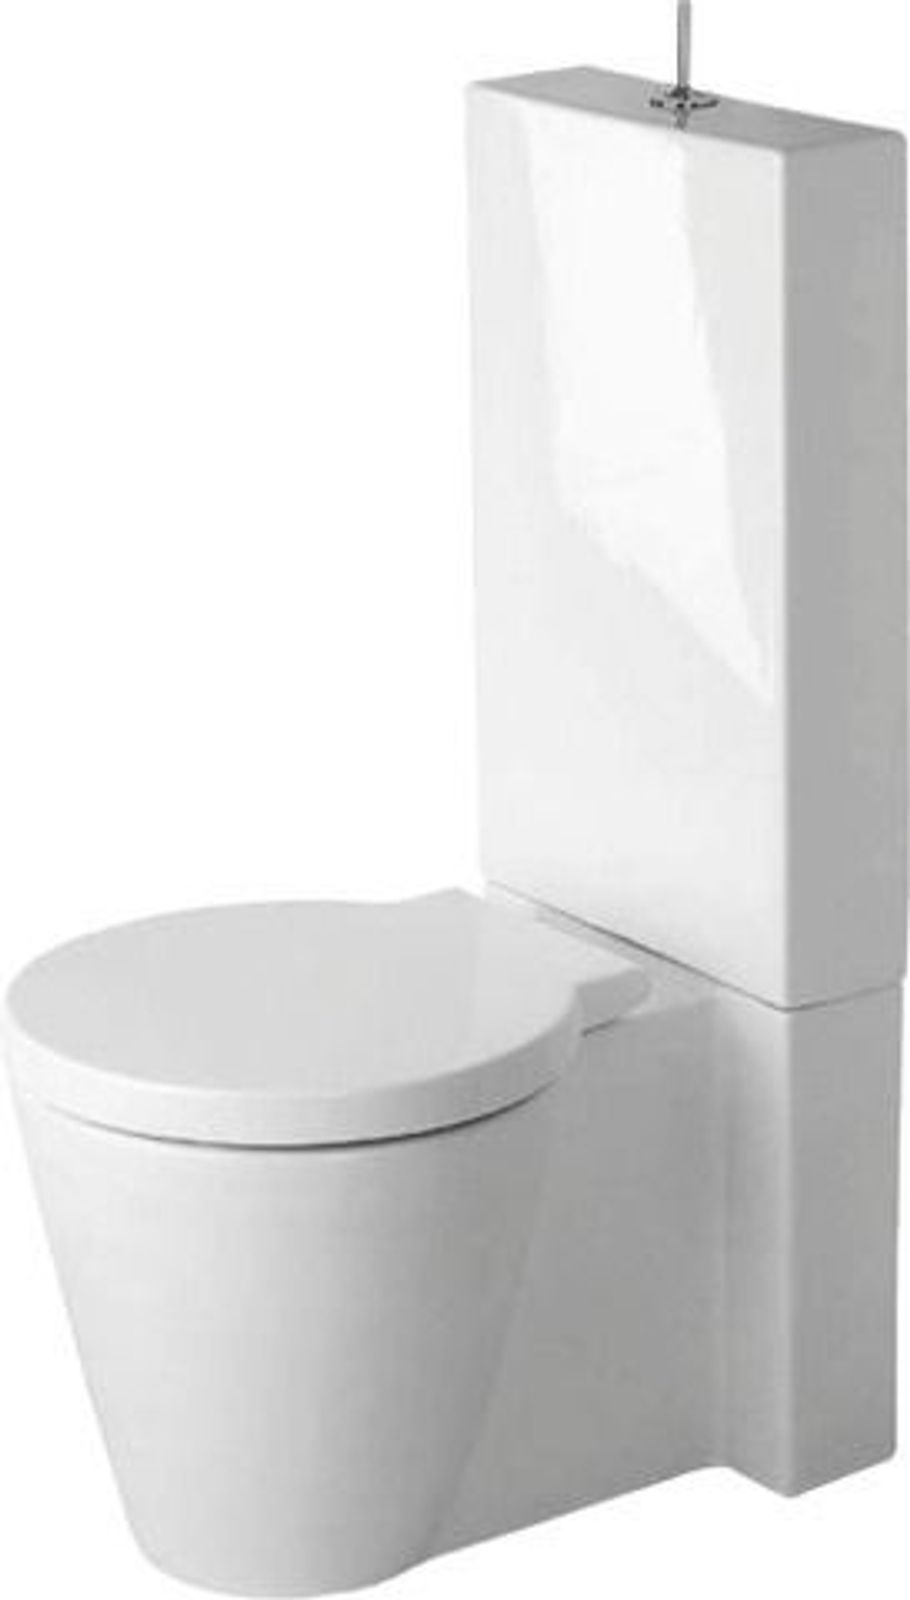 Stand-WC Kombi Starck 1 640 mm Tiefspüler, f.SPK, Abg.Vario, weiß